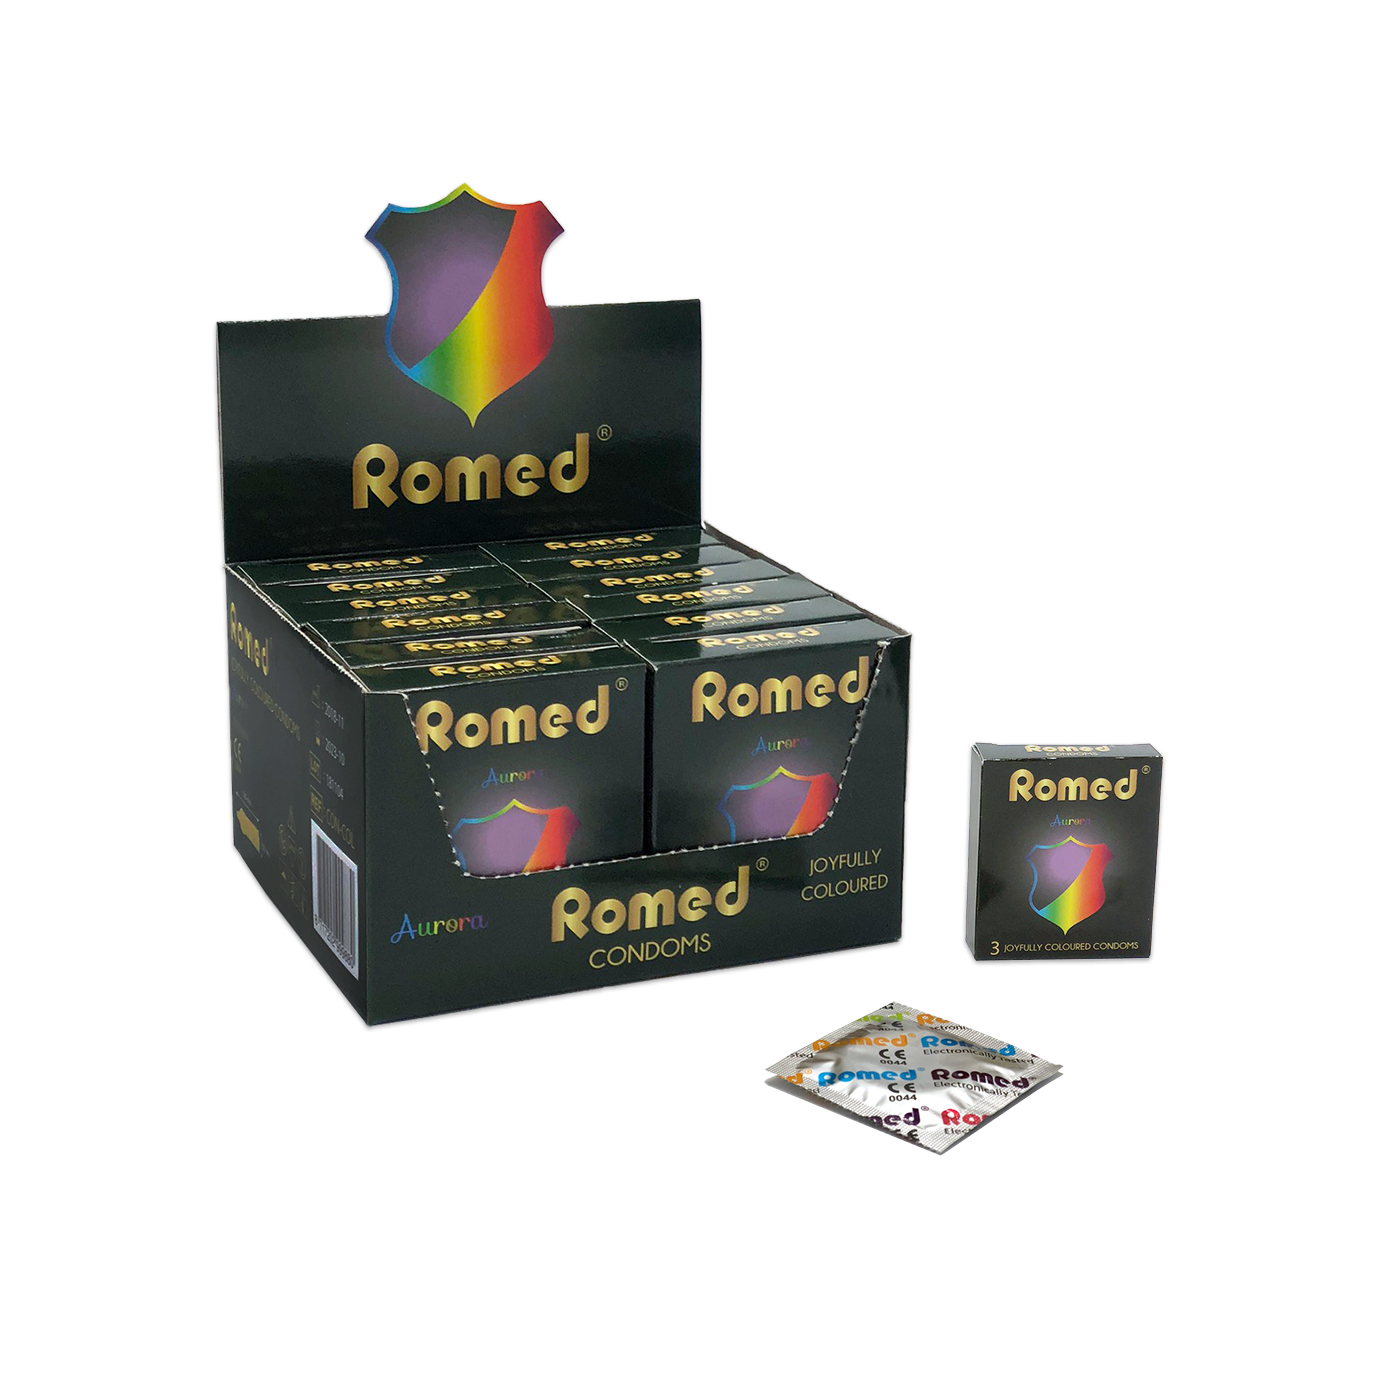 CON-COL Préservatifs colorés Romed, 3 unités conditionnées dans une enveloppe, sous cellophane, 48 enveloppes de 3 unités = 144 unités par boîte intérieure (= 1 lot), 30 x 144 unités = 4 320 unités par carton.